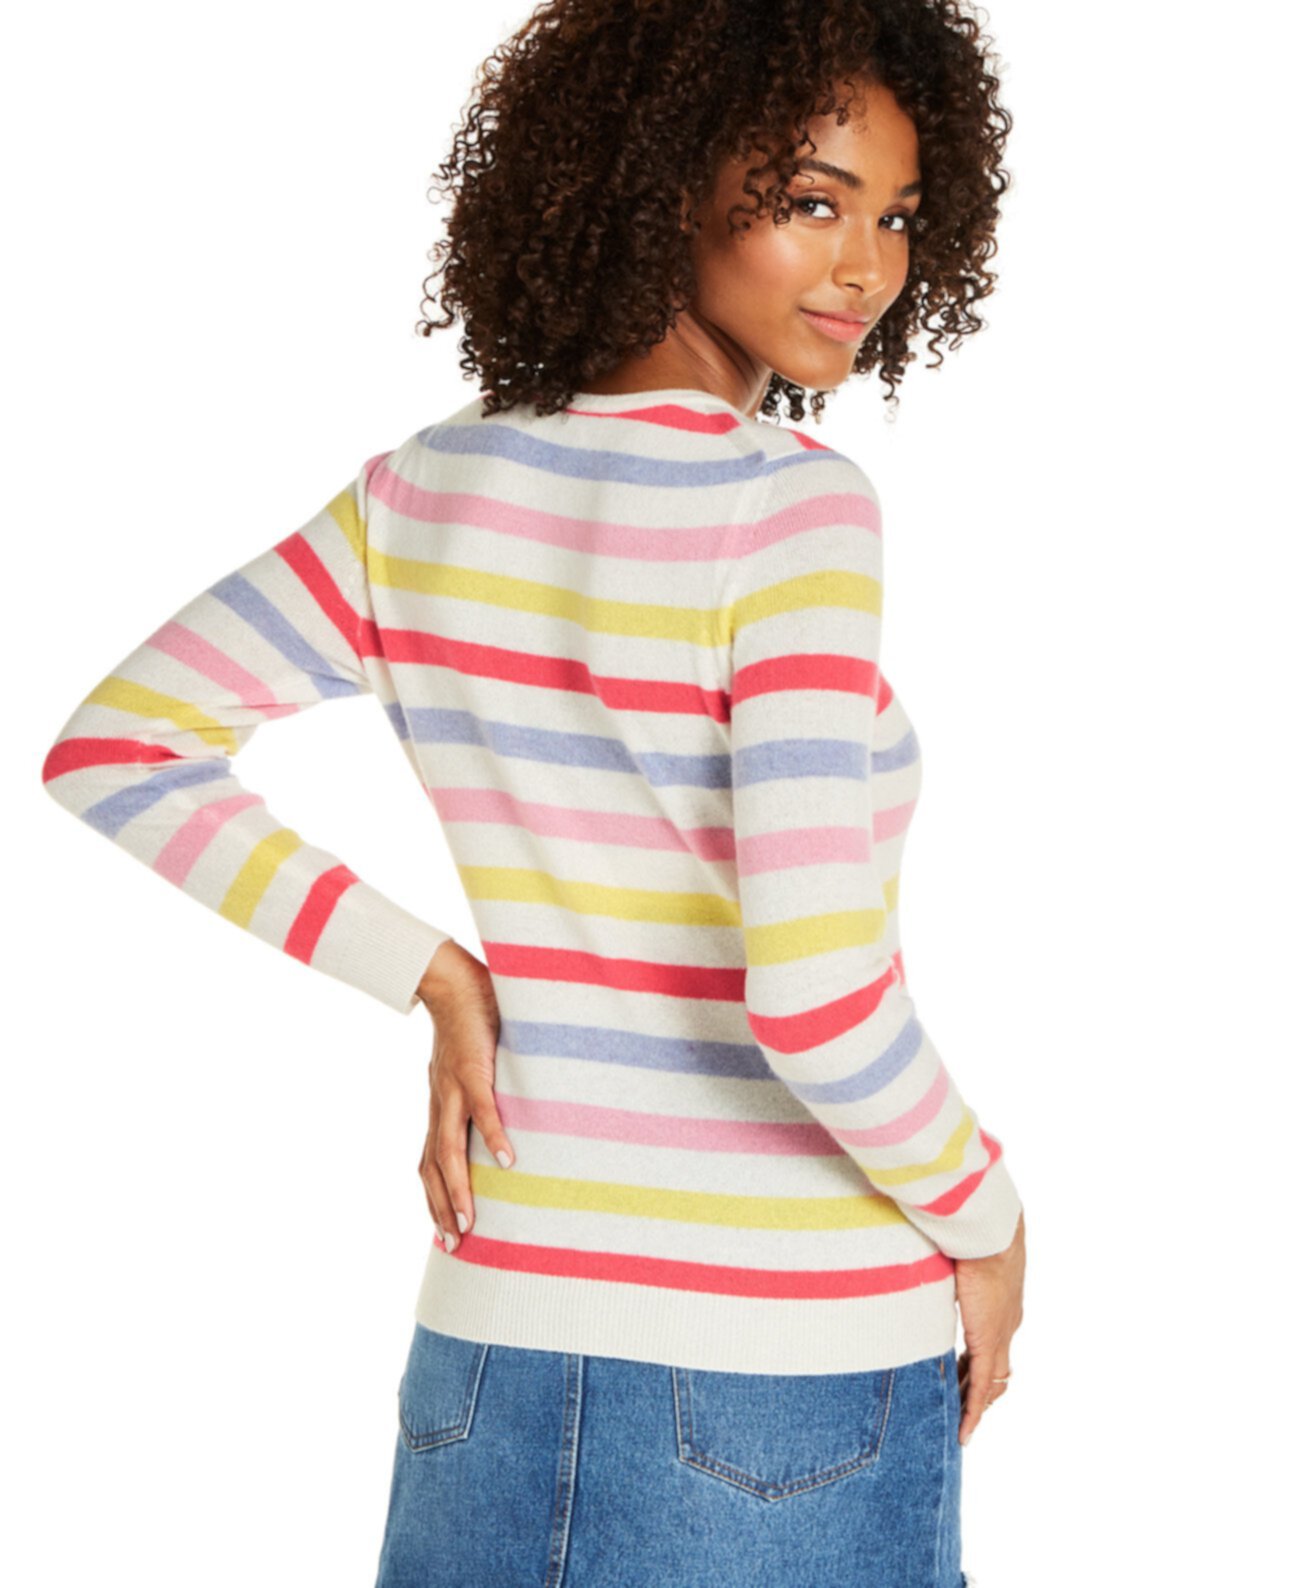 Полосатый кашемировый свитер, созданный для Macy's Charter Club